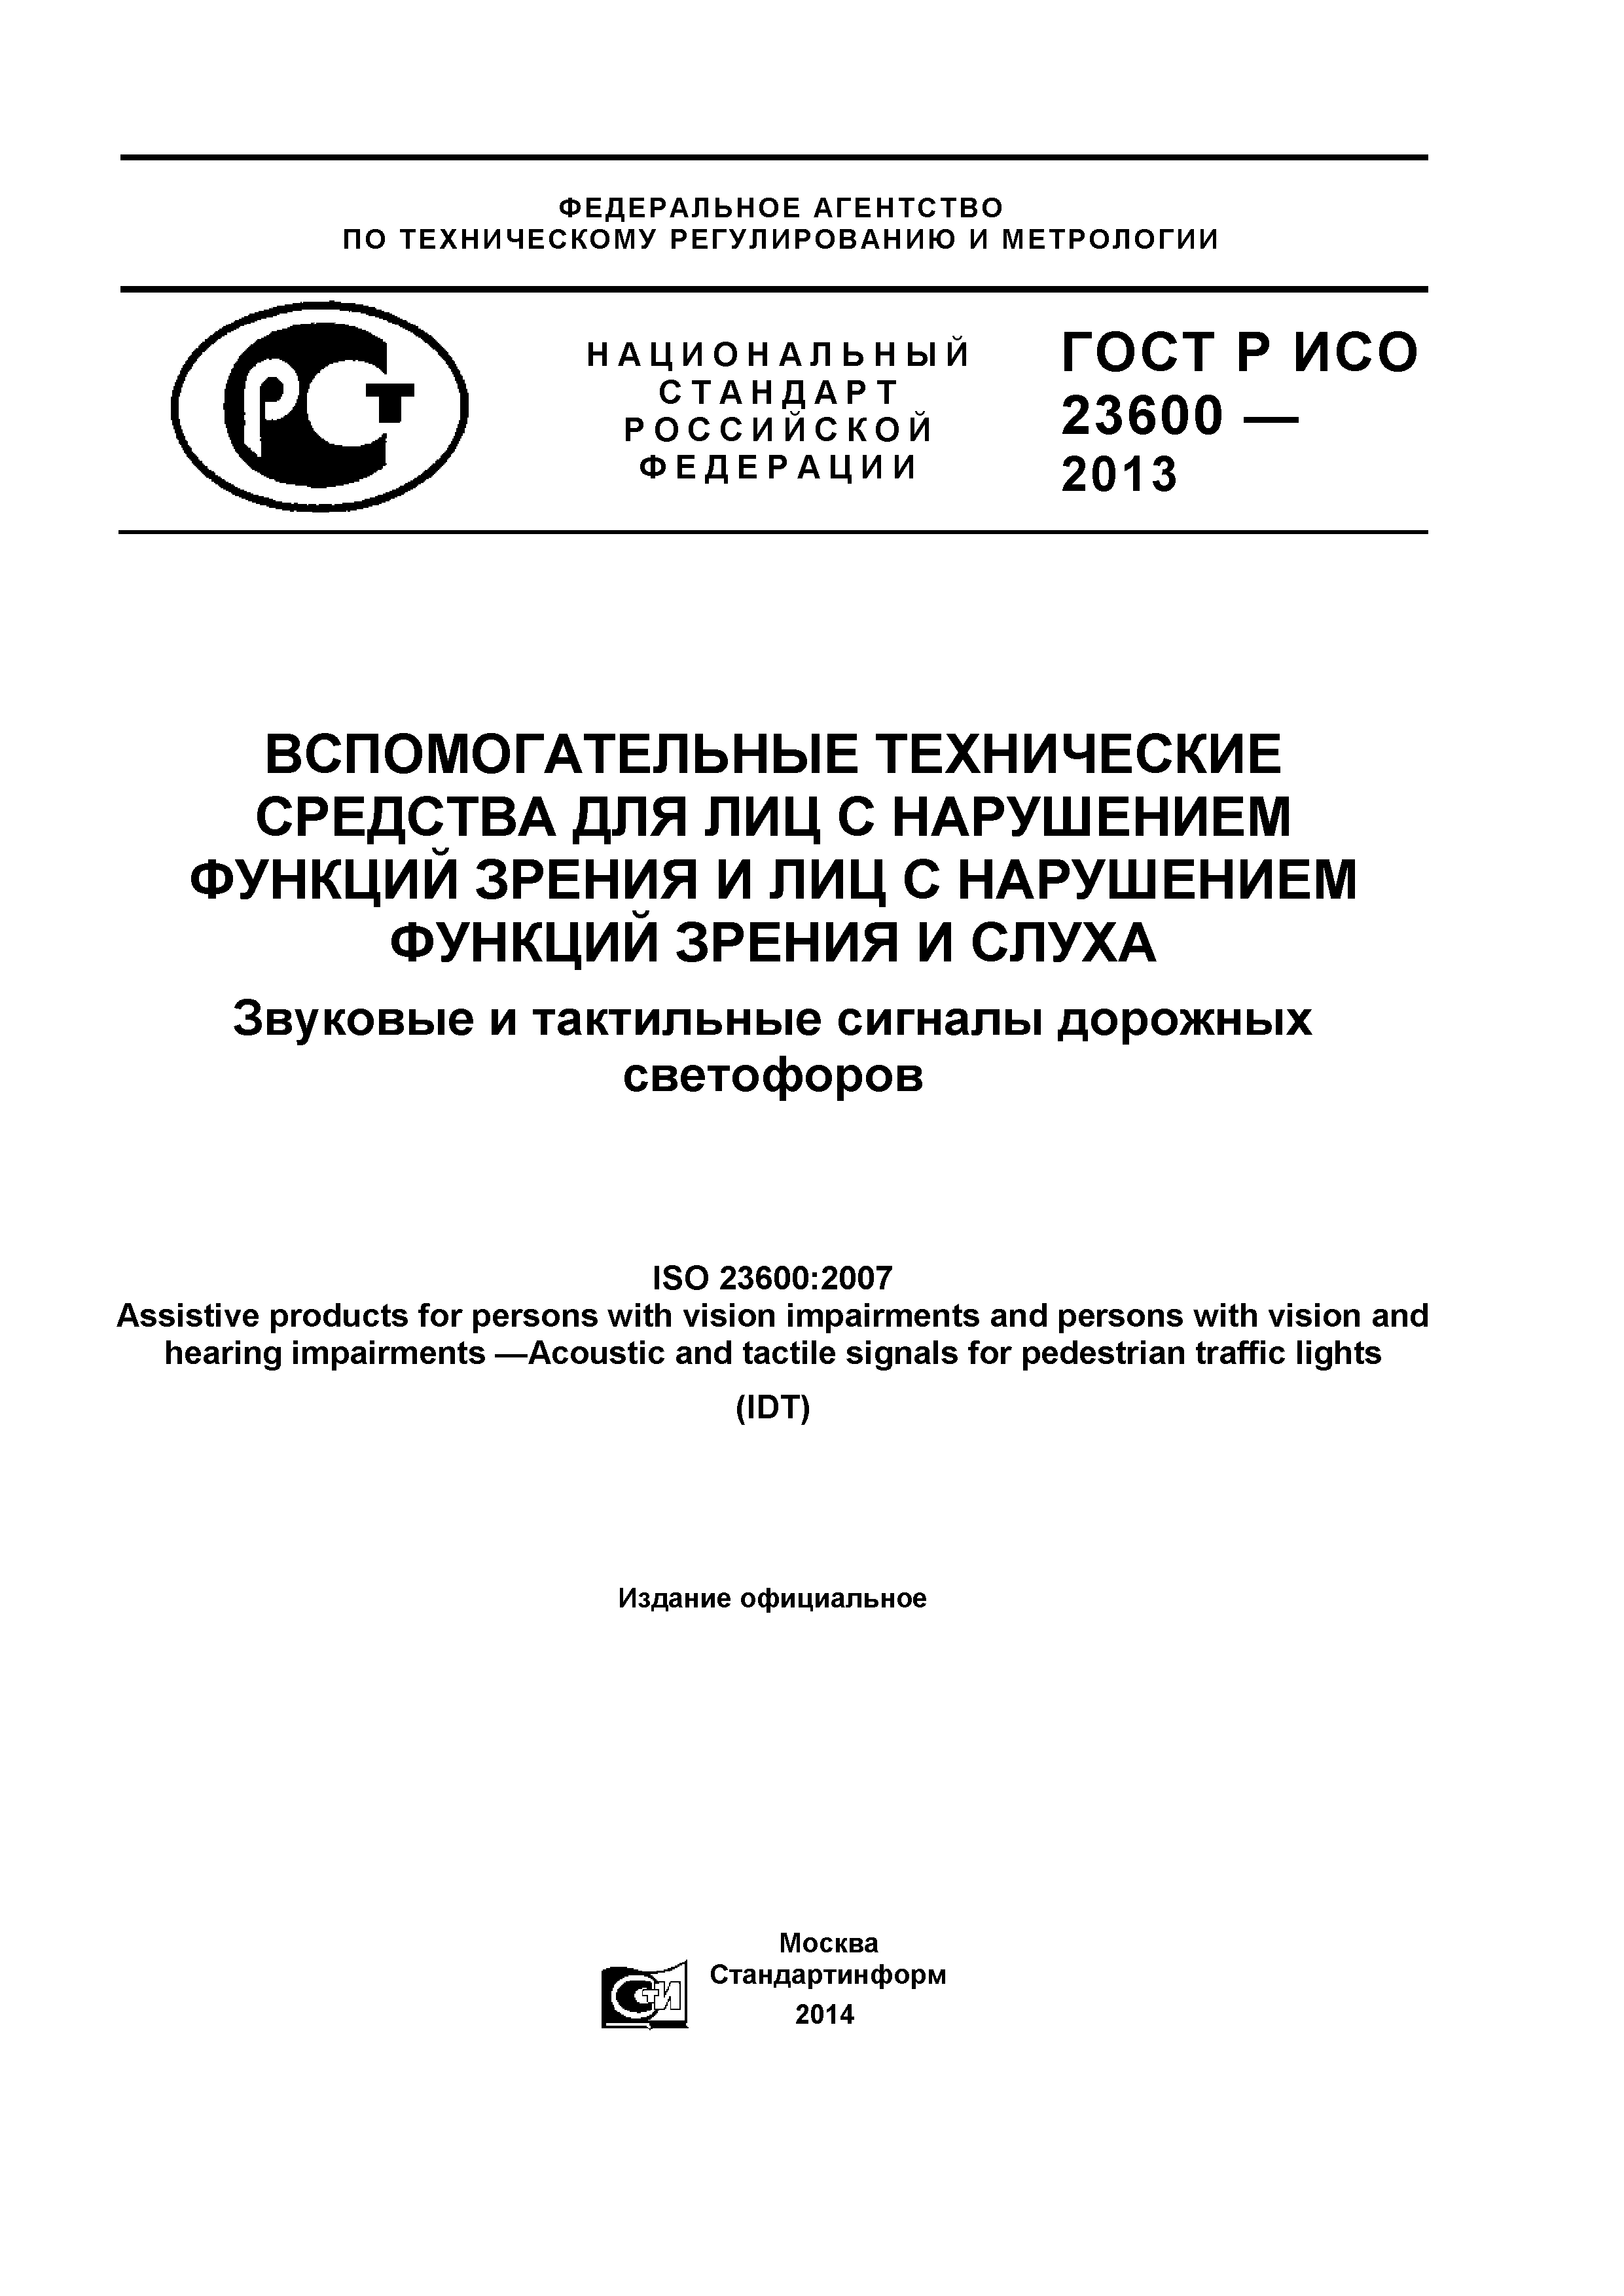 ГОСТ Р ИСО 23600-2013